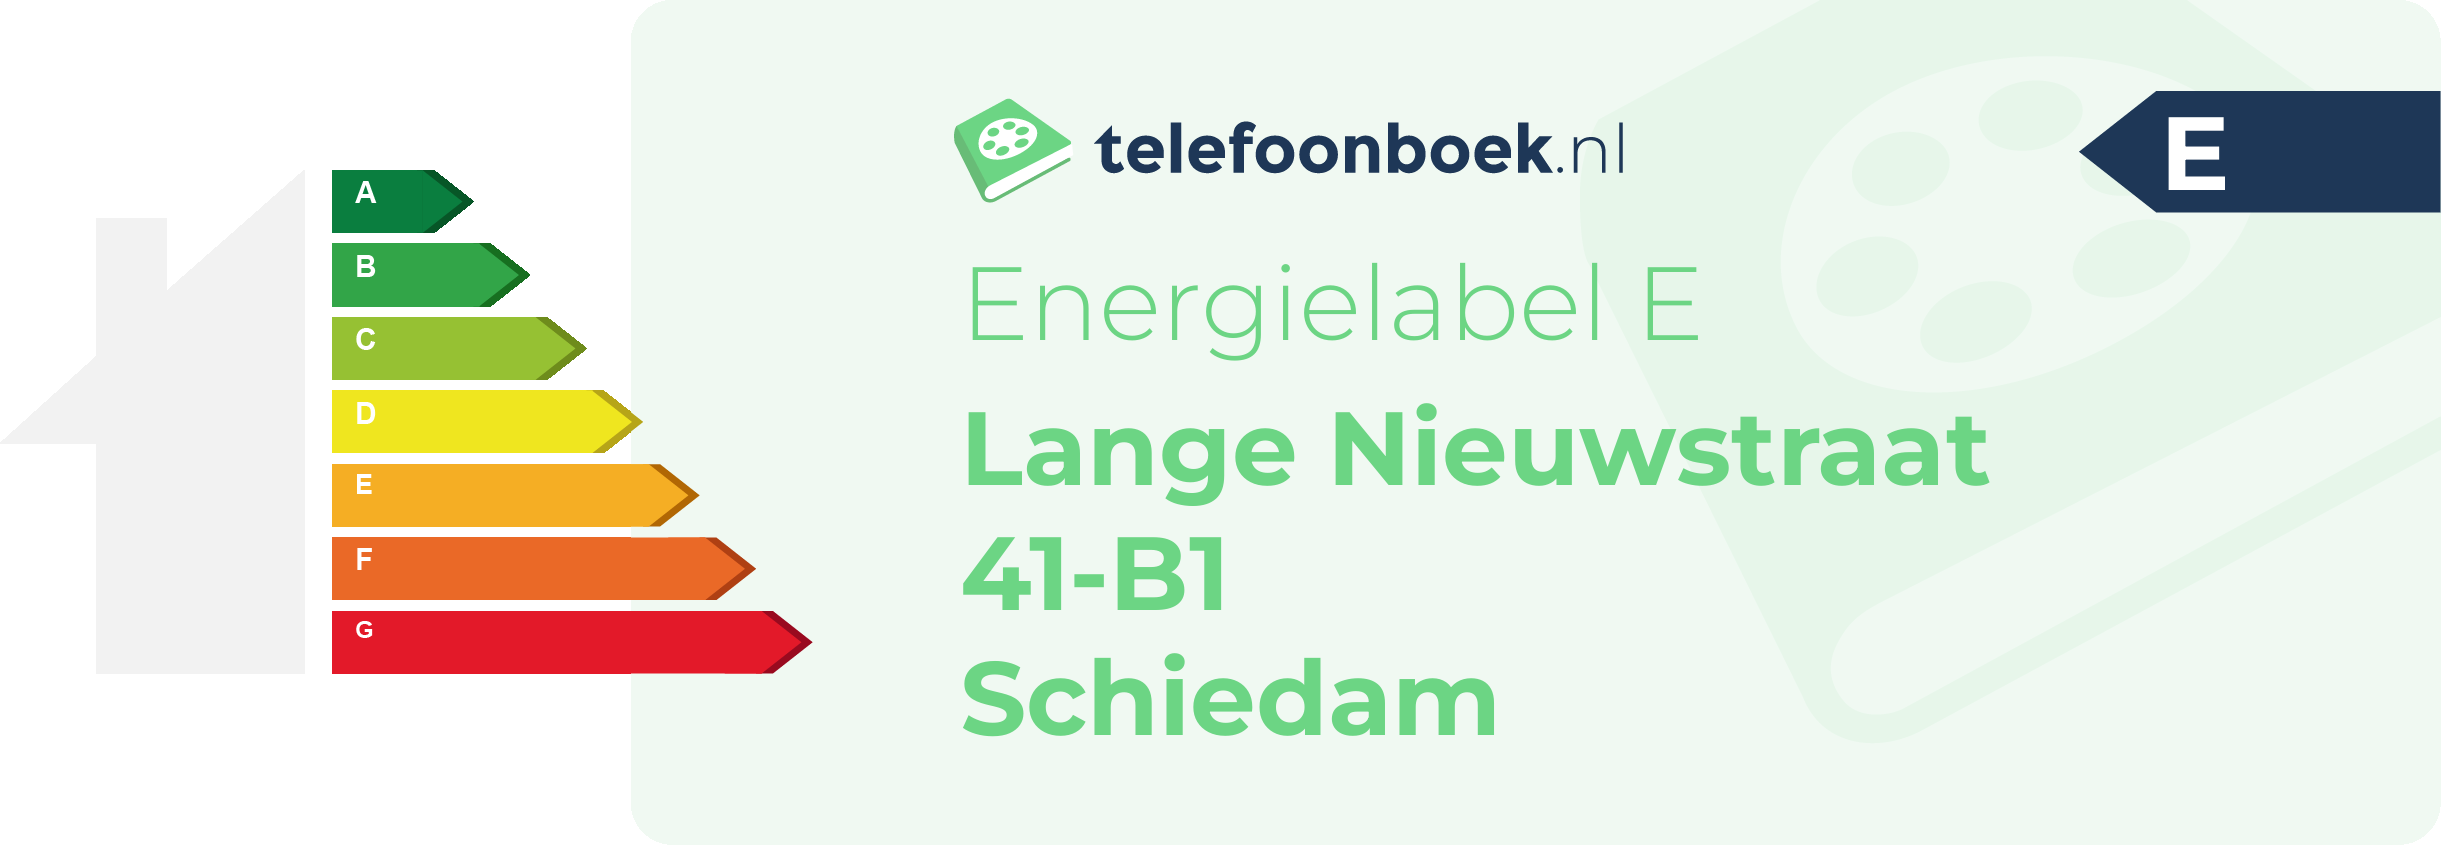 Energielabel Lange Nieuwstraat 41-B1 Schiedam